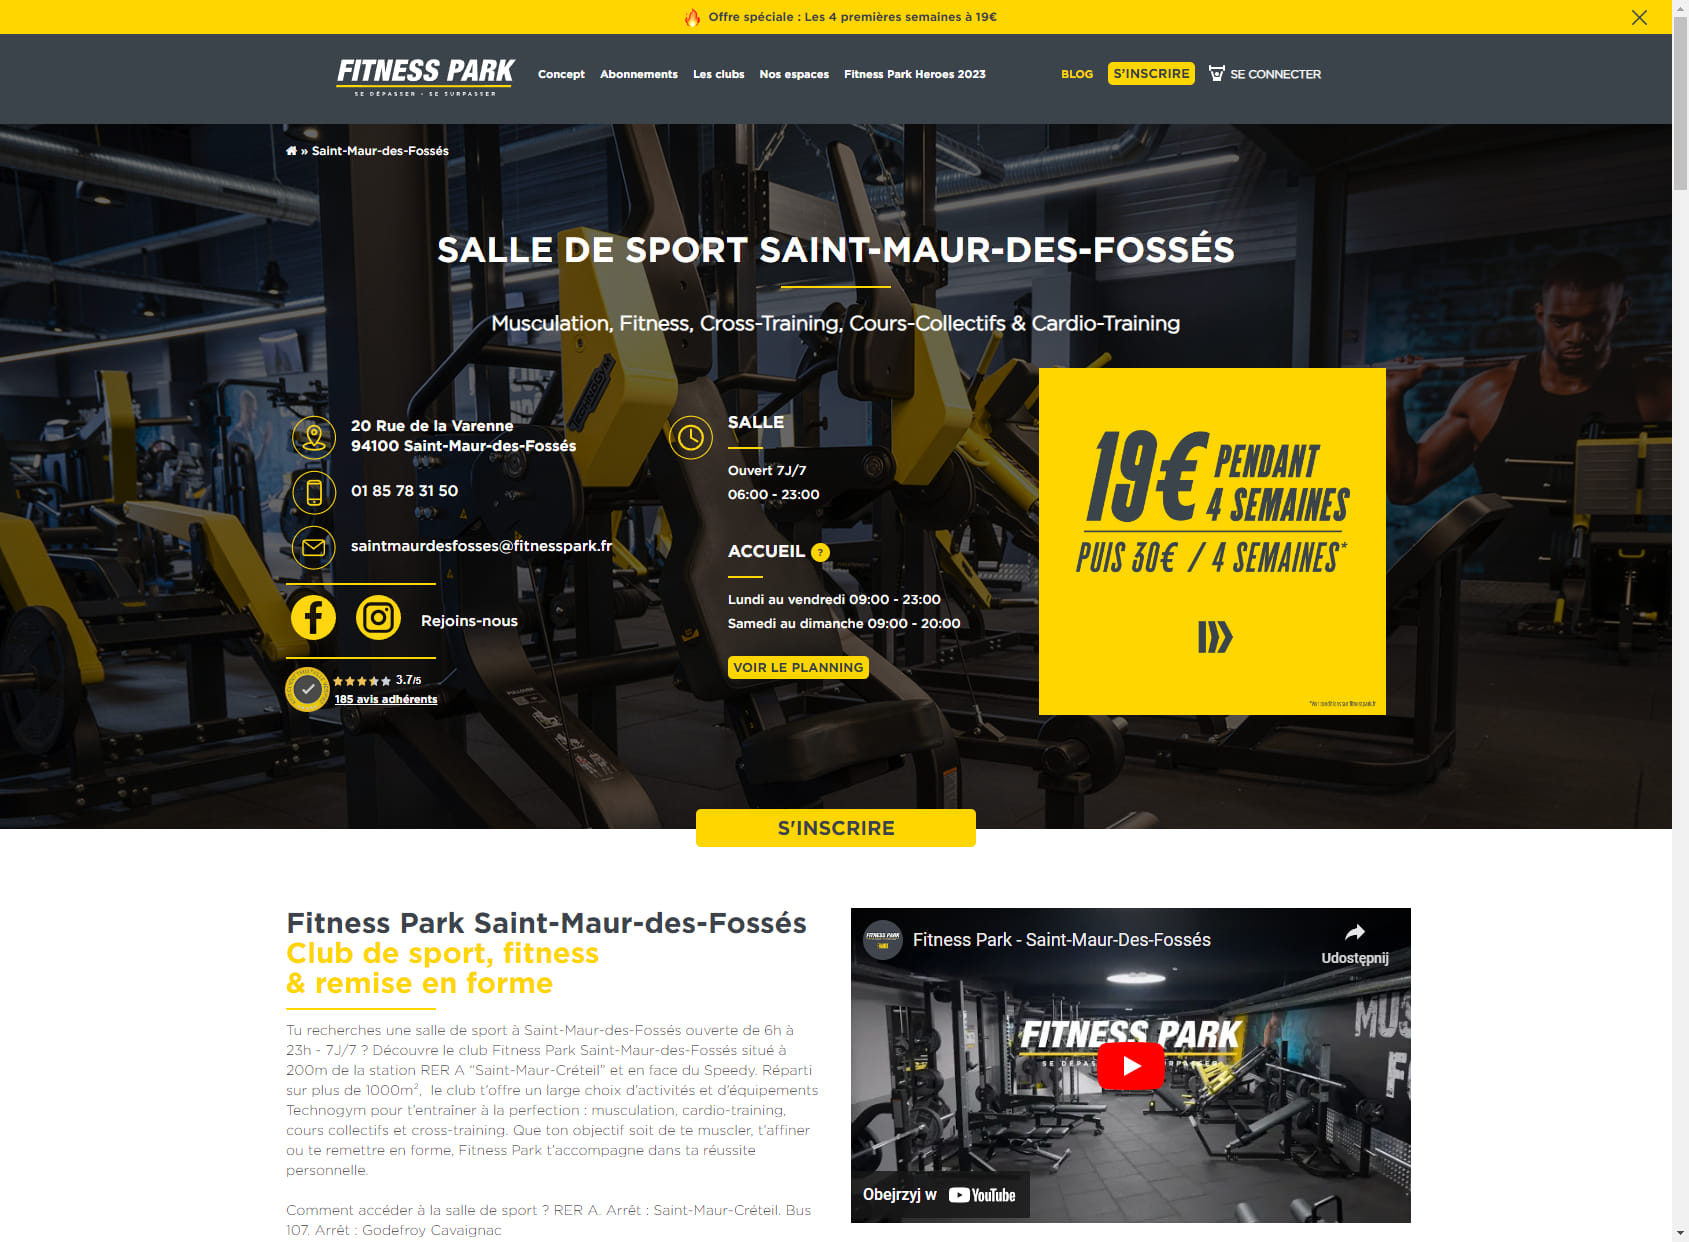 Salle de sport Saint-Maur-des-Fossés - Fitness Park